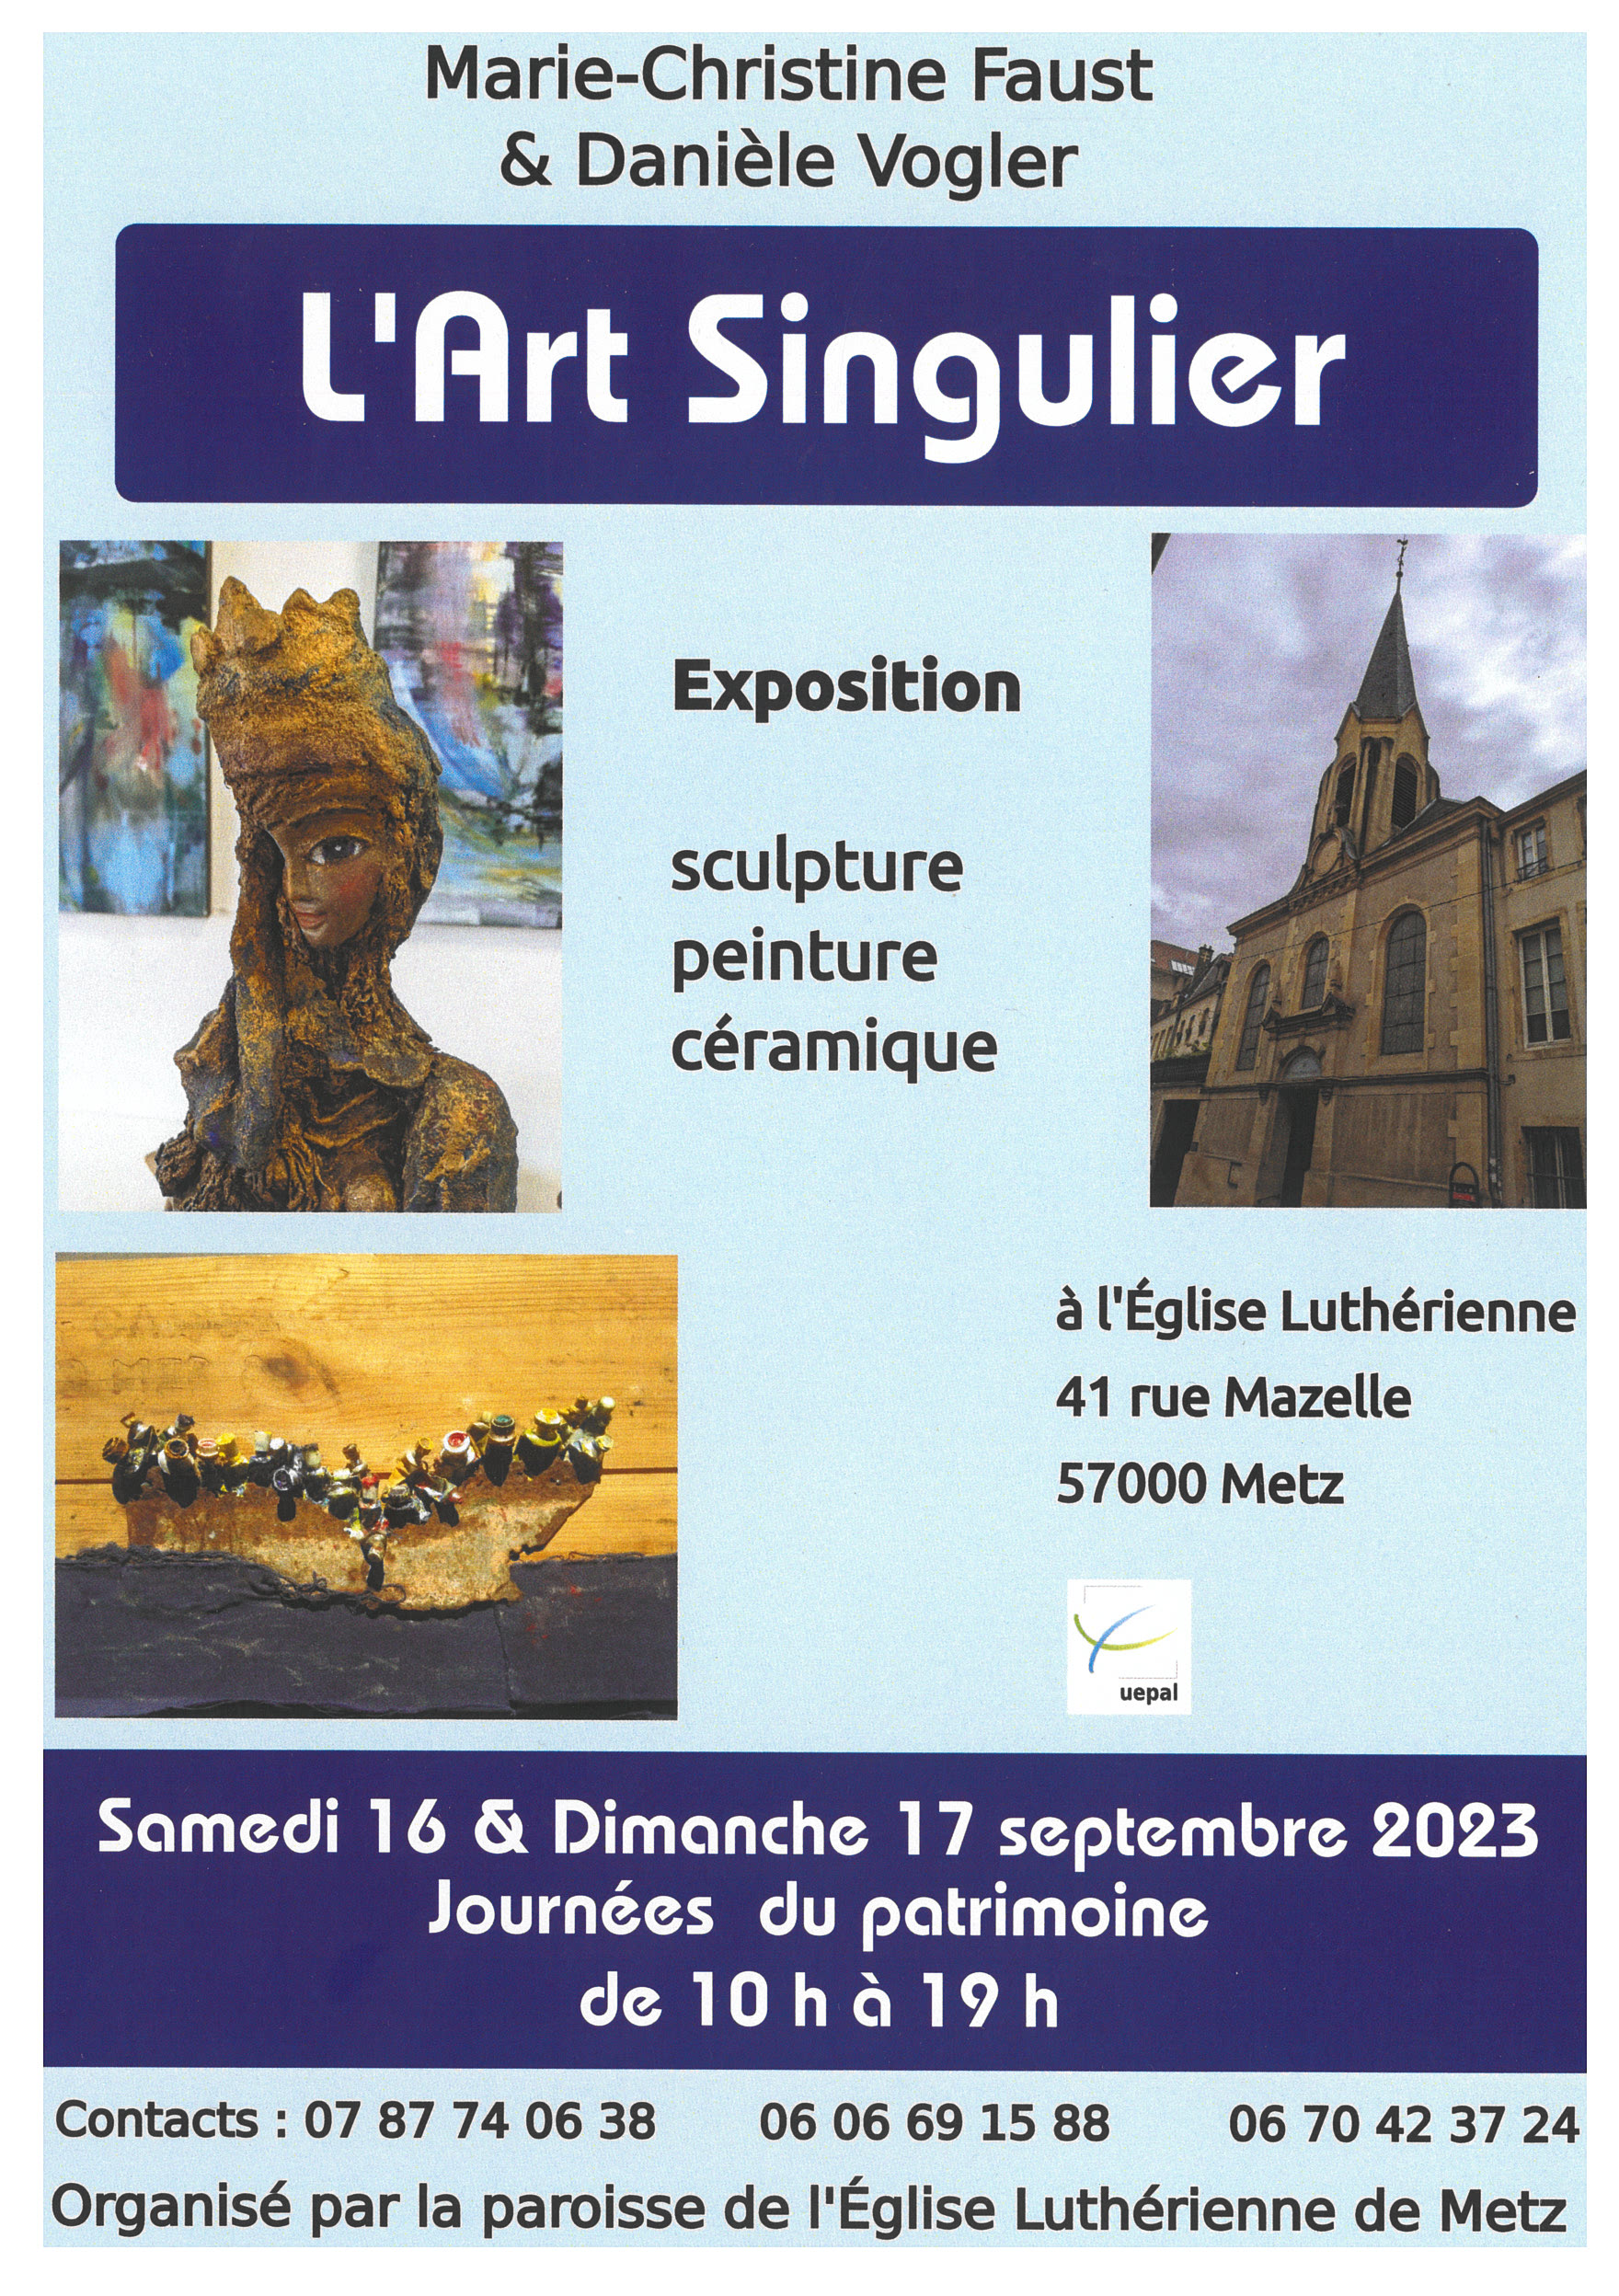 Exhibition - Singular art